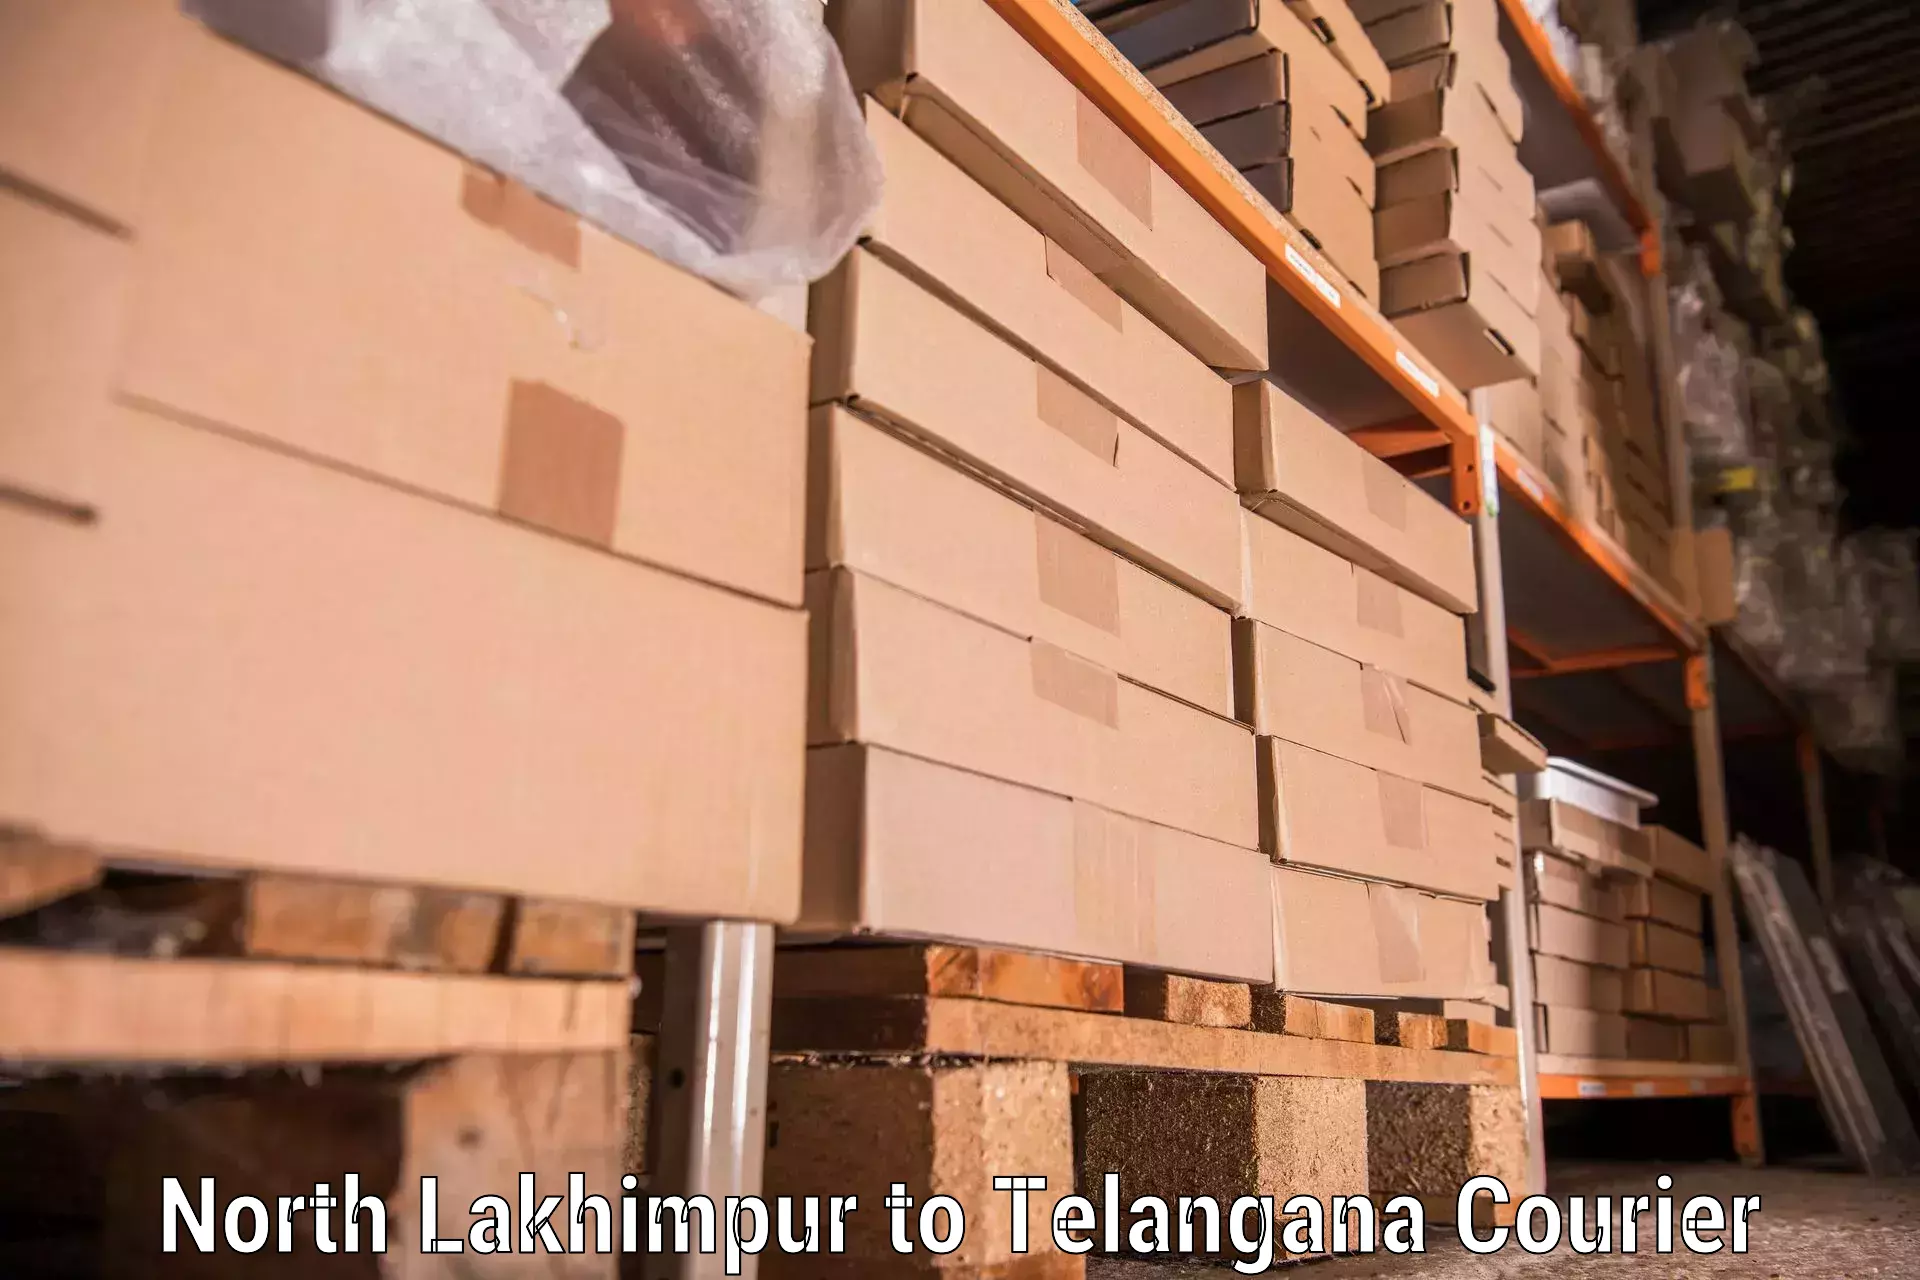 Expert furniture transport North Lakhimpur to Kakeshwaram